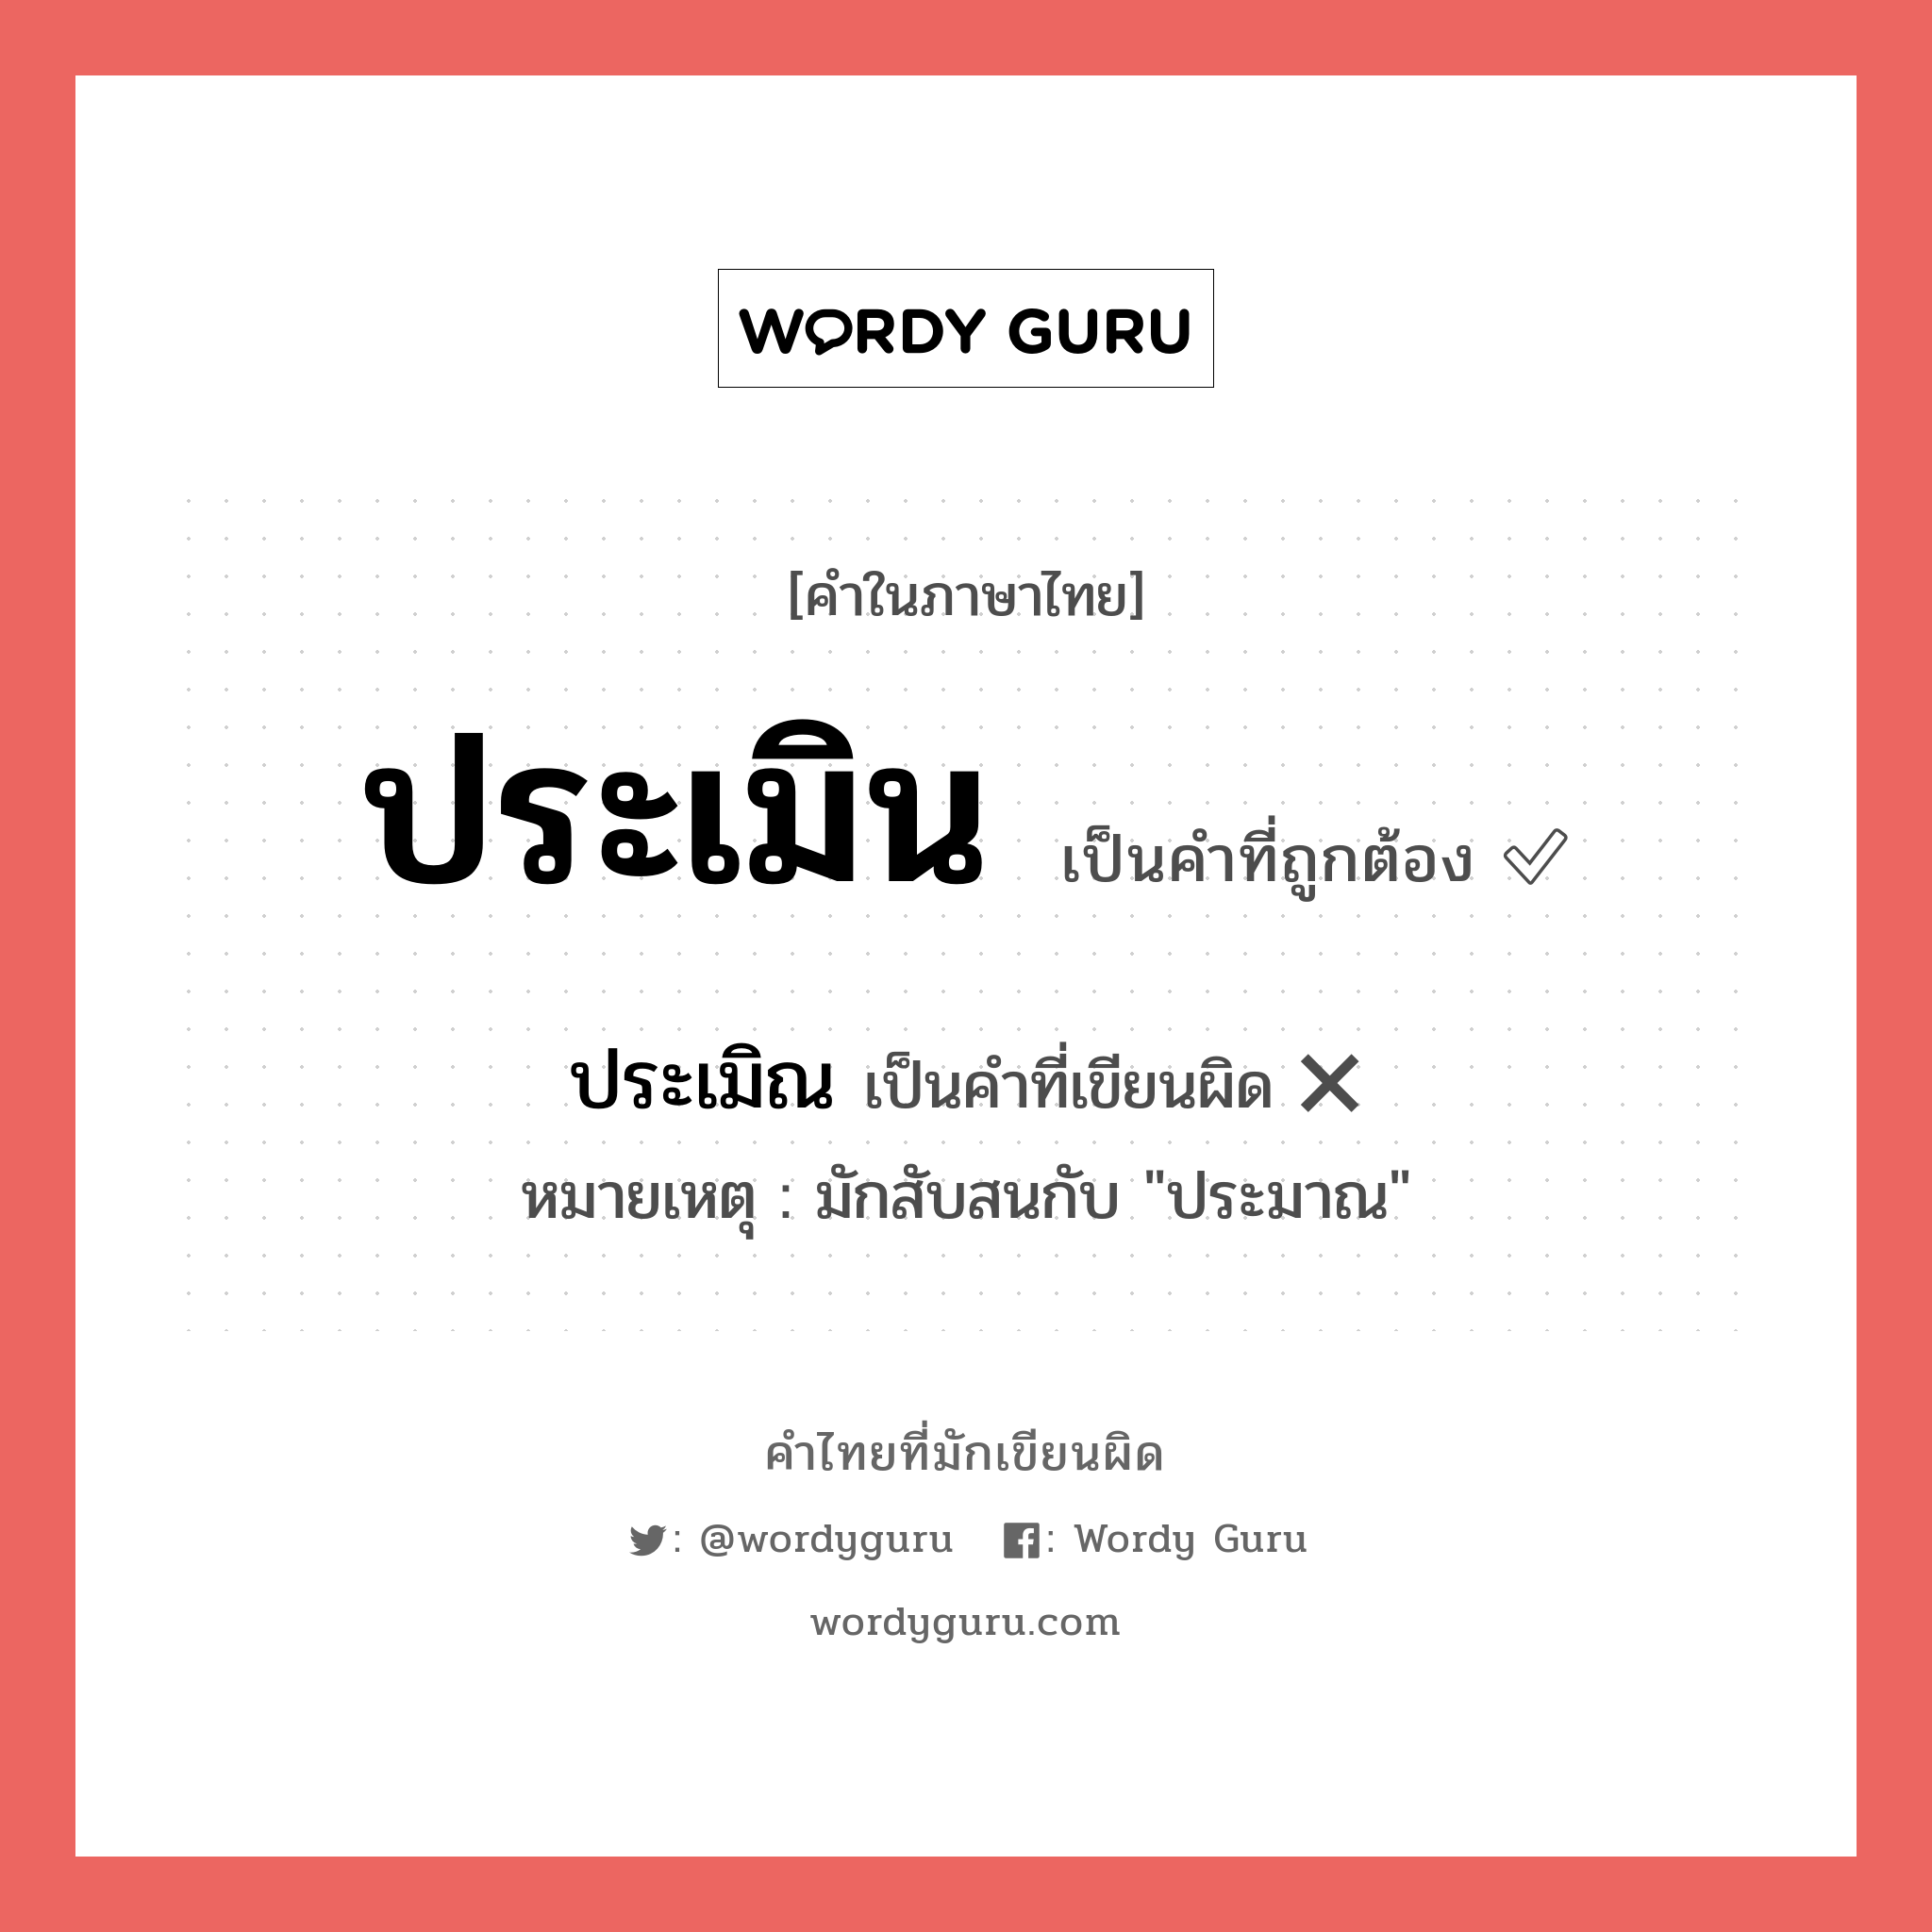 ประเมิณ หรือ ประเมิน คำไหนเขียนถูก?, คำในภาษาไทยที่มักเขียนผิด ประเมิณ คำที่ผิด ❌ ประเมิน หมายเหตุ มักสับสนกับ "ประมาณ"